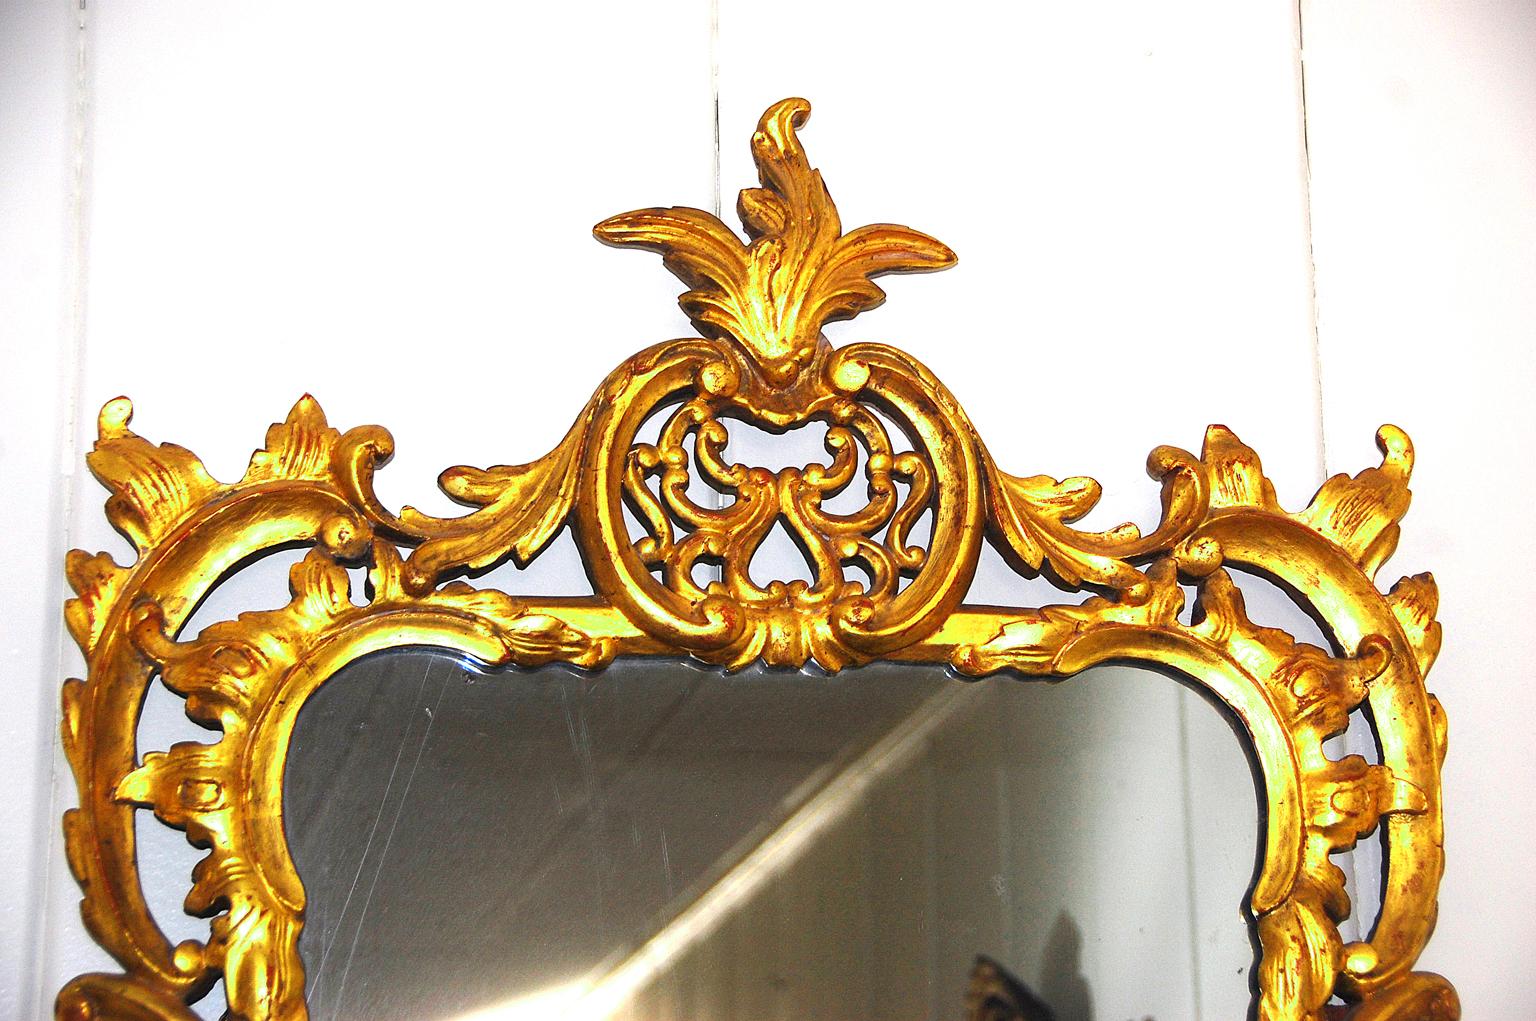 Miroir anglais d'époque George III sculpté à la feuille d'or, avec des motifs de feuillages et de fleurs, d'élégants perçages et un écoulement autour du miroir réalisés par un maître sculpteur, vers 1790.